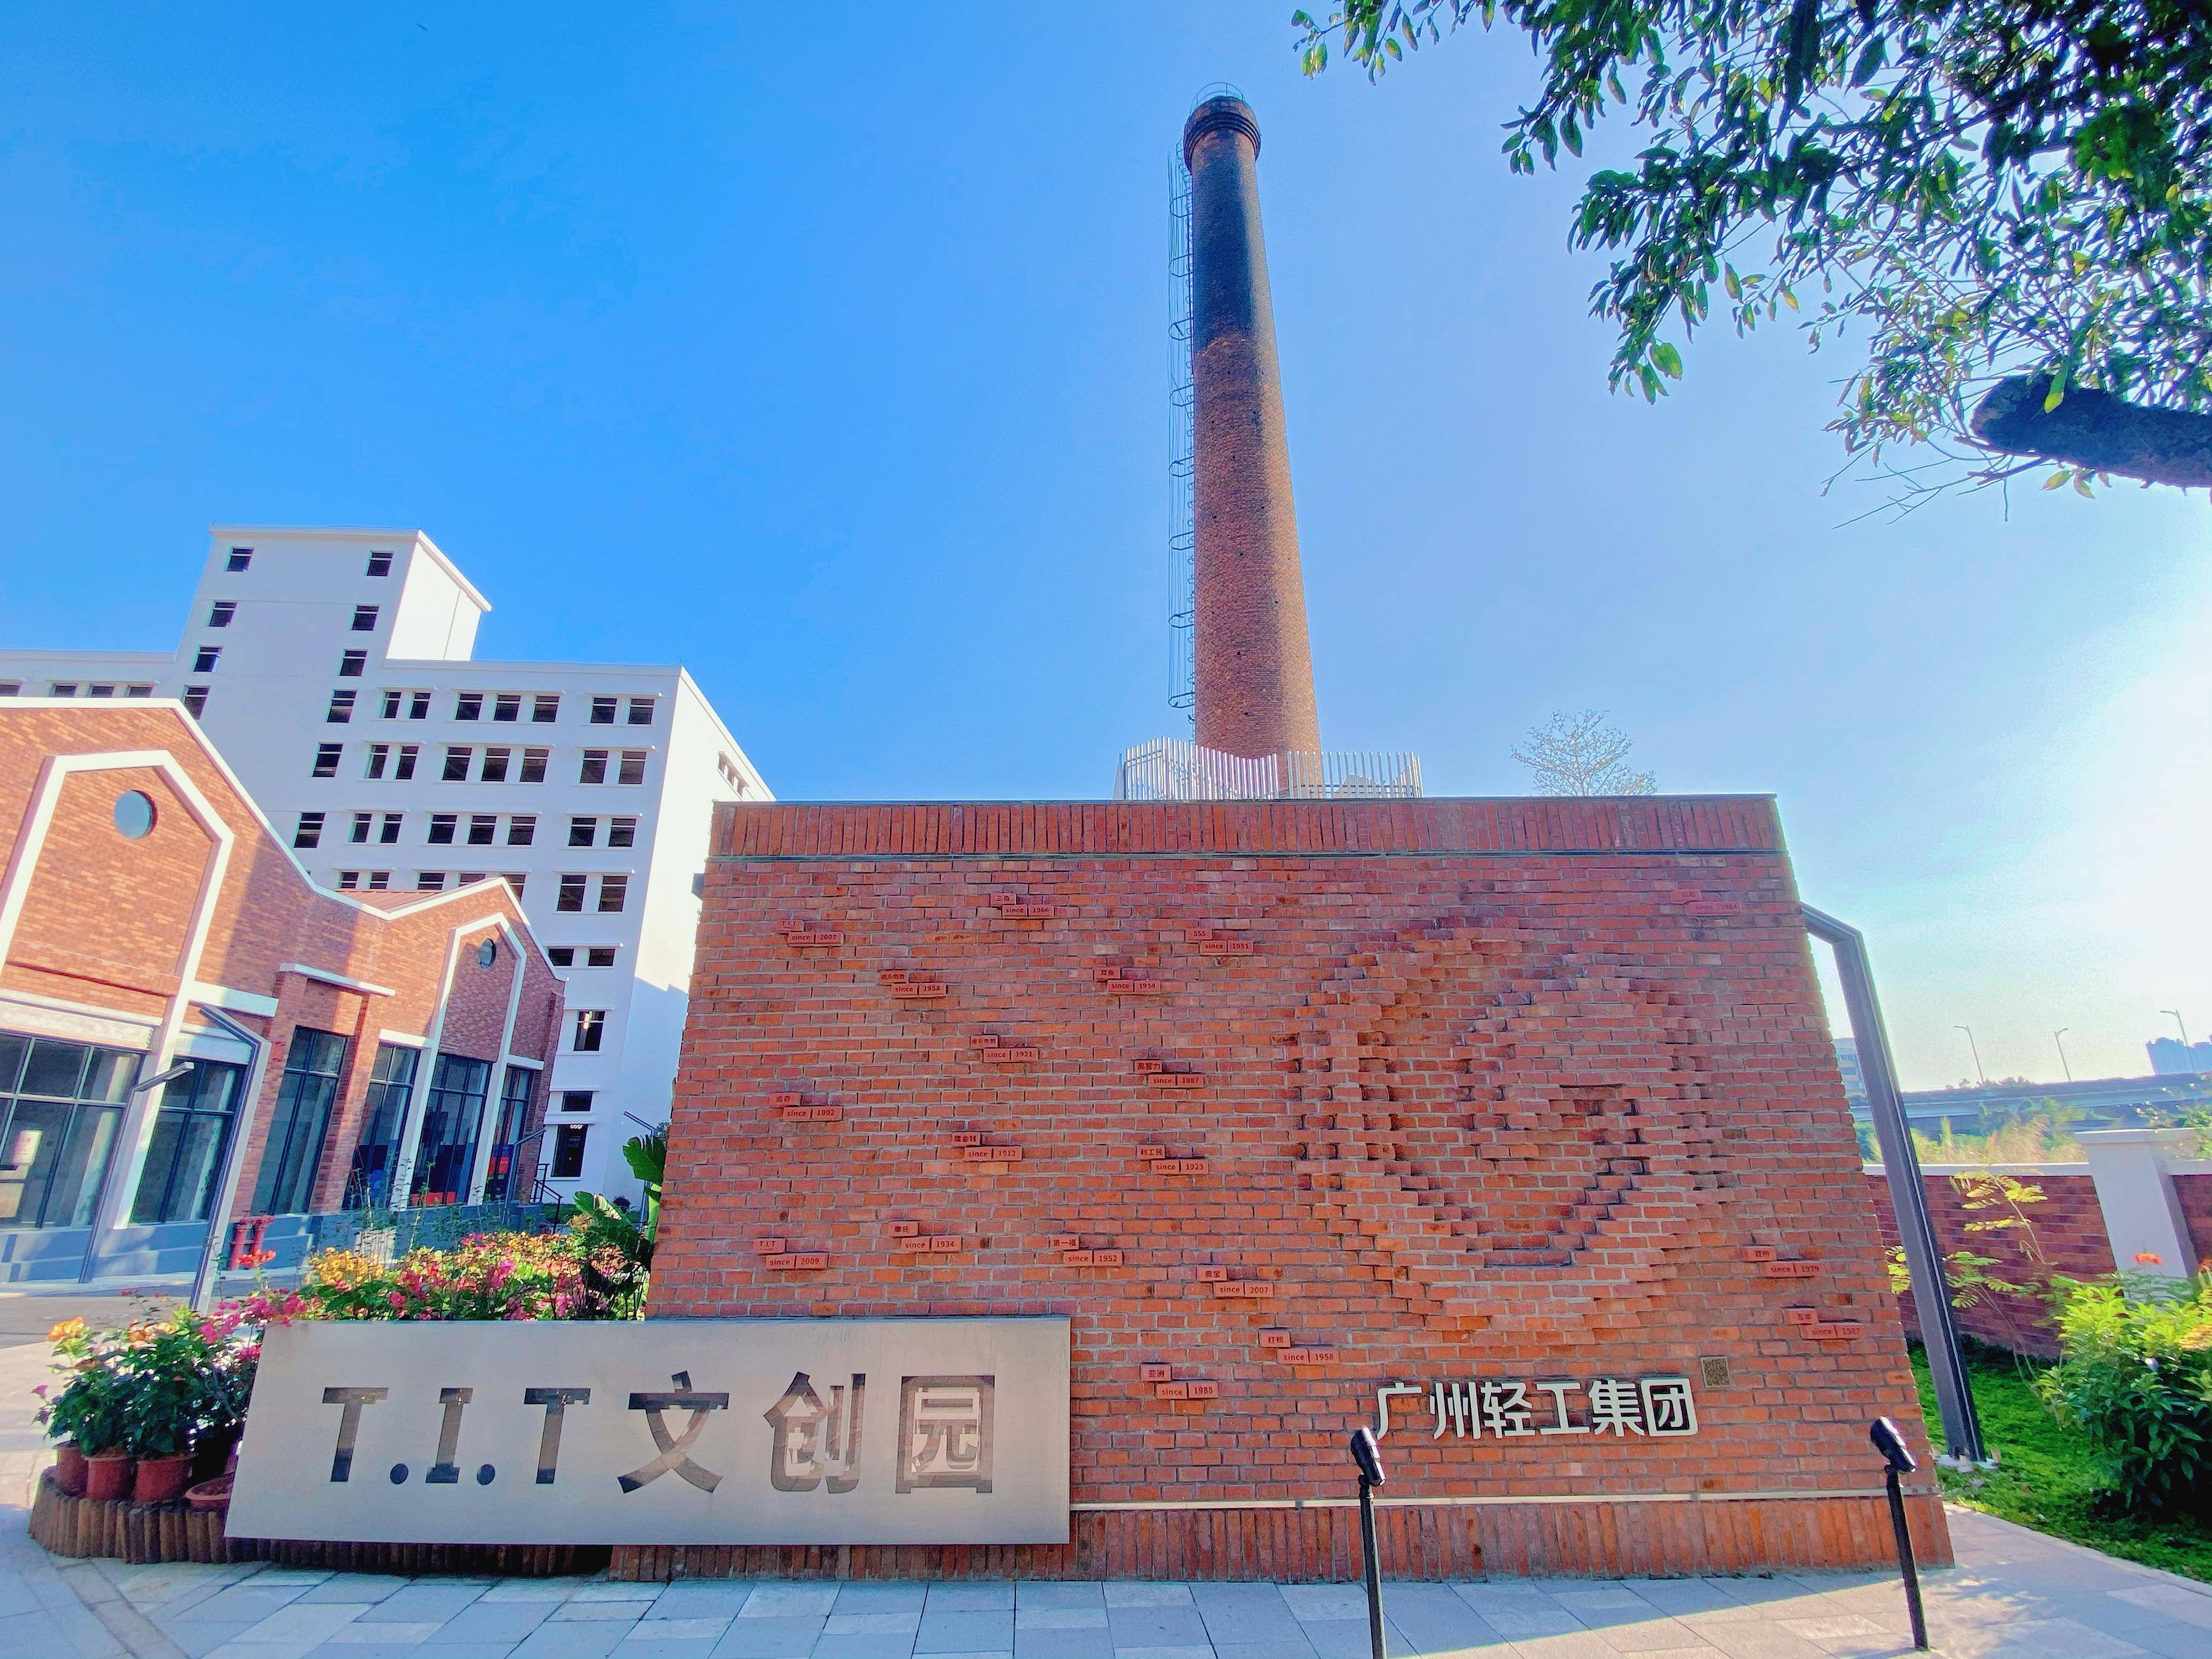 广州最具成长潜力文化产业园区10强tit文创园:极具吸引力的数字文创园